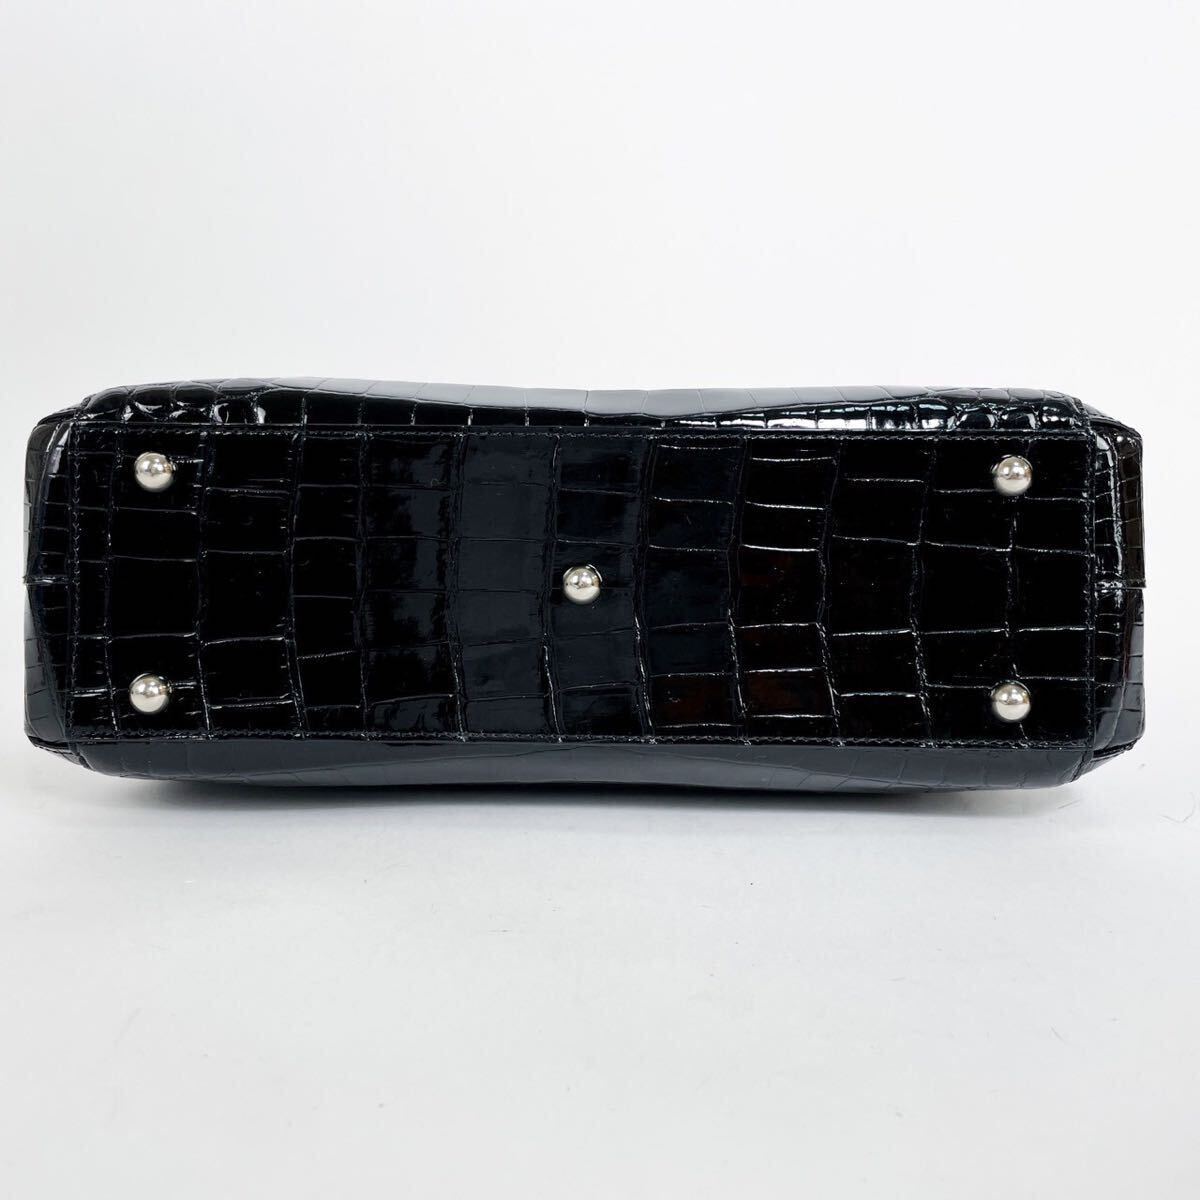  не использовался хранение товар SANPO sun po - автомобиль крыло черный ko крокодил ручная сумочка большая сумка JRA чёрный руль . формальный черный 